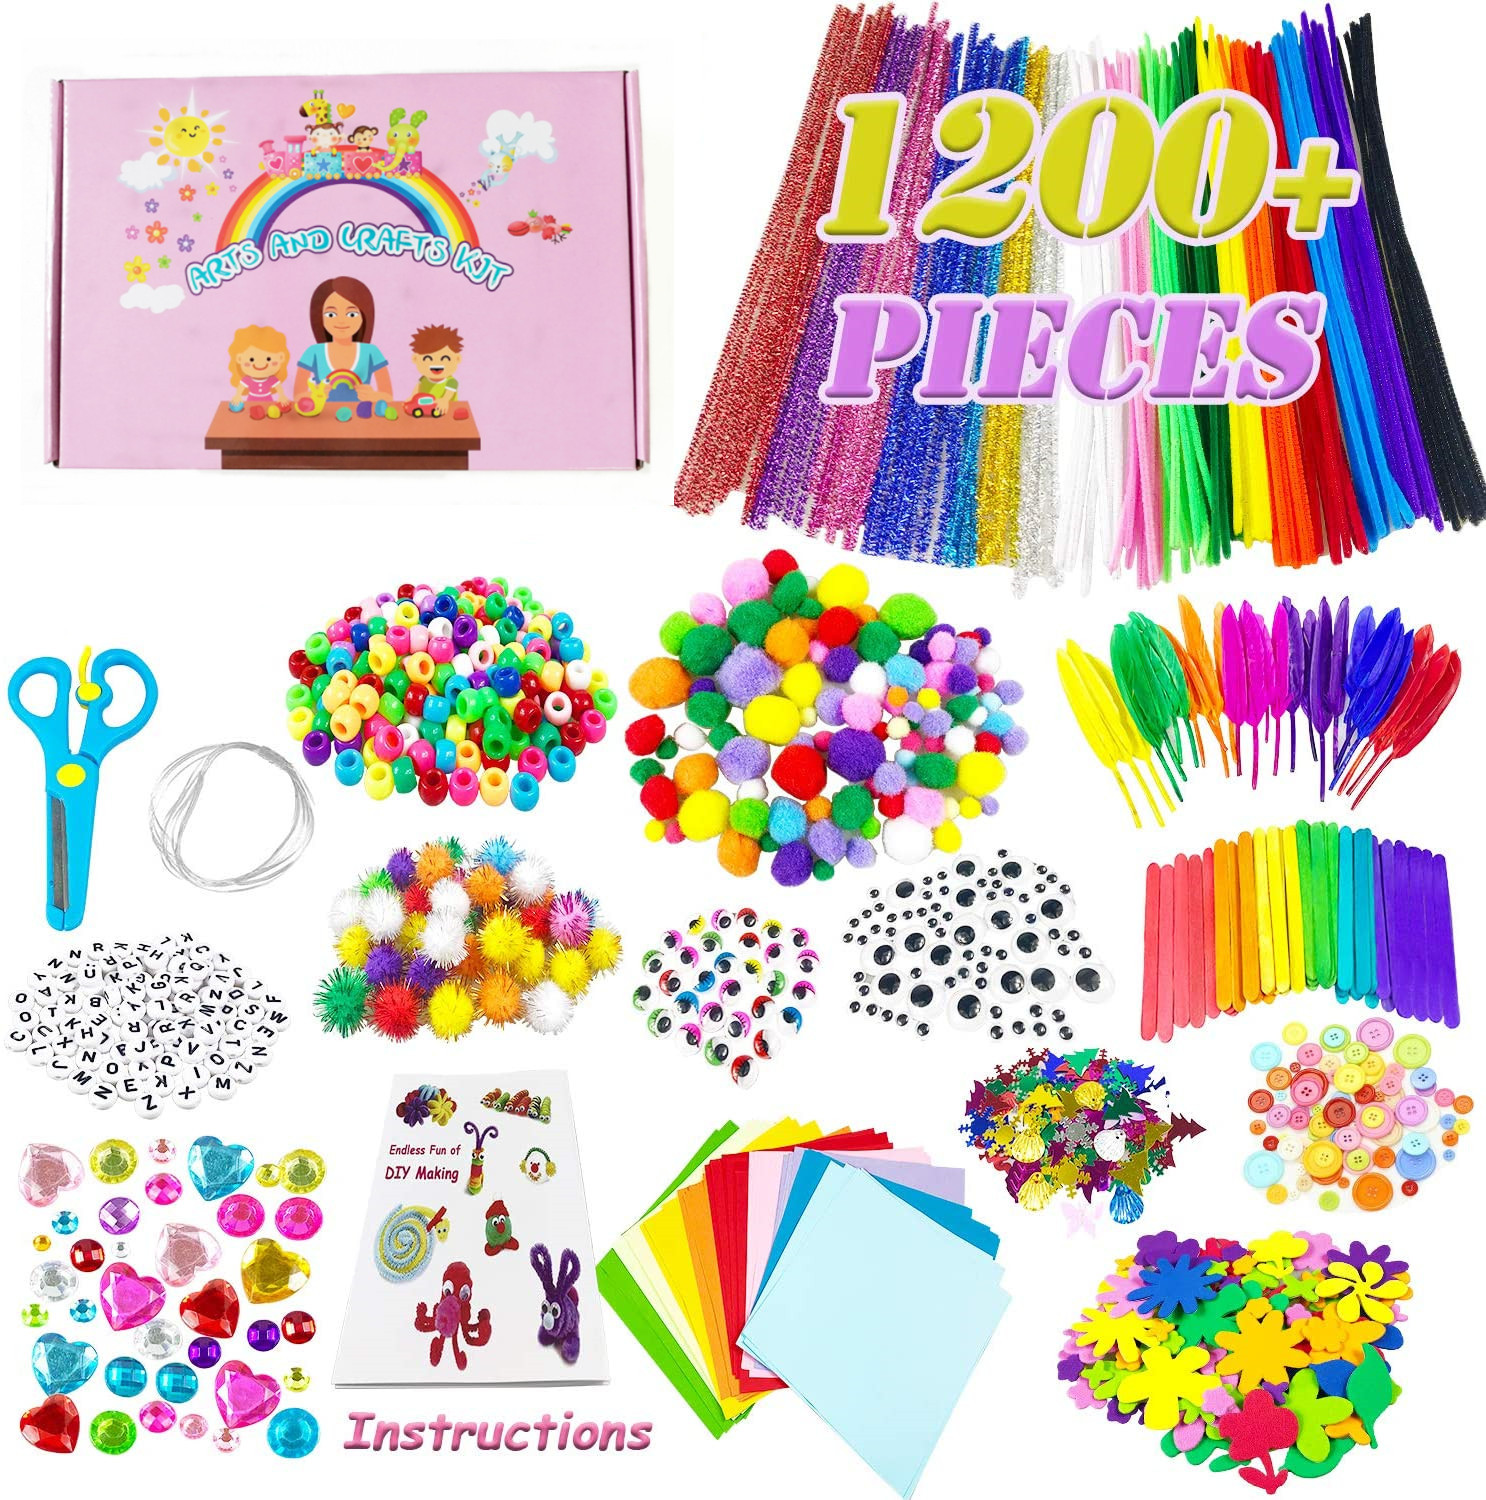 亚马逊热销1200+DIY玩具儿童益智玩具儿童手工制作工艺装饰套装